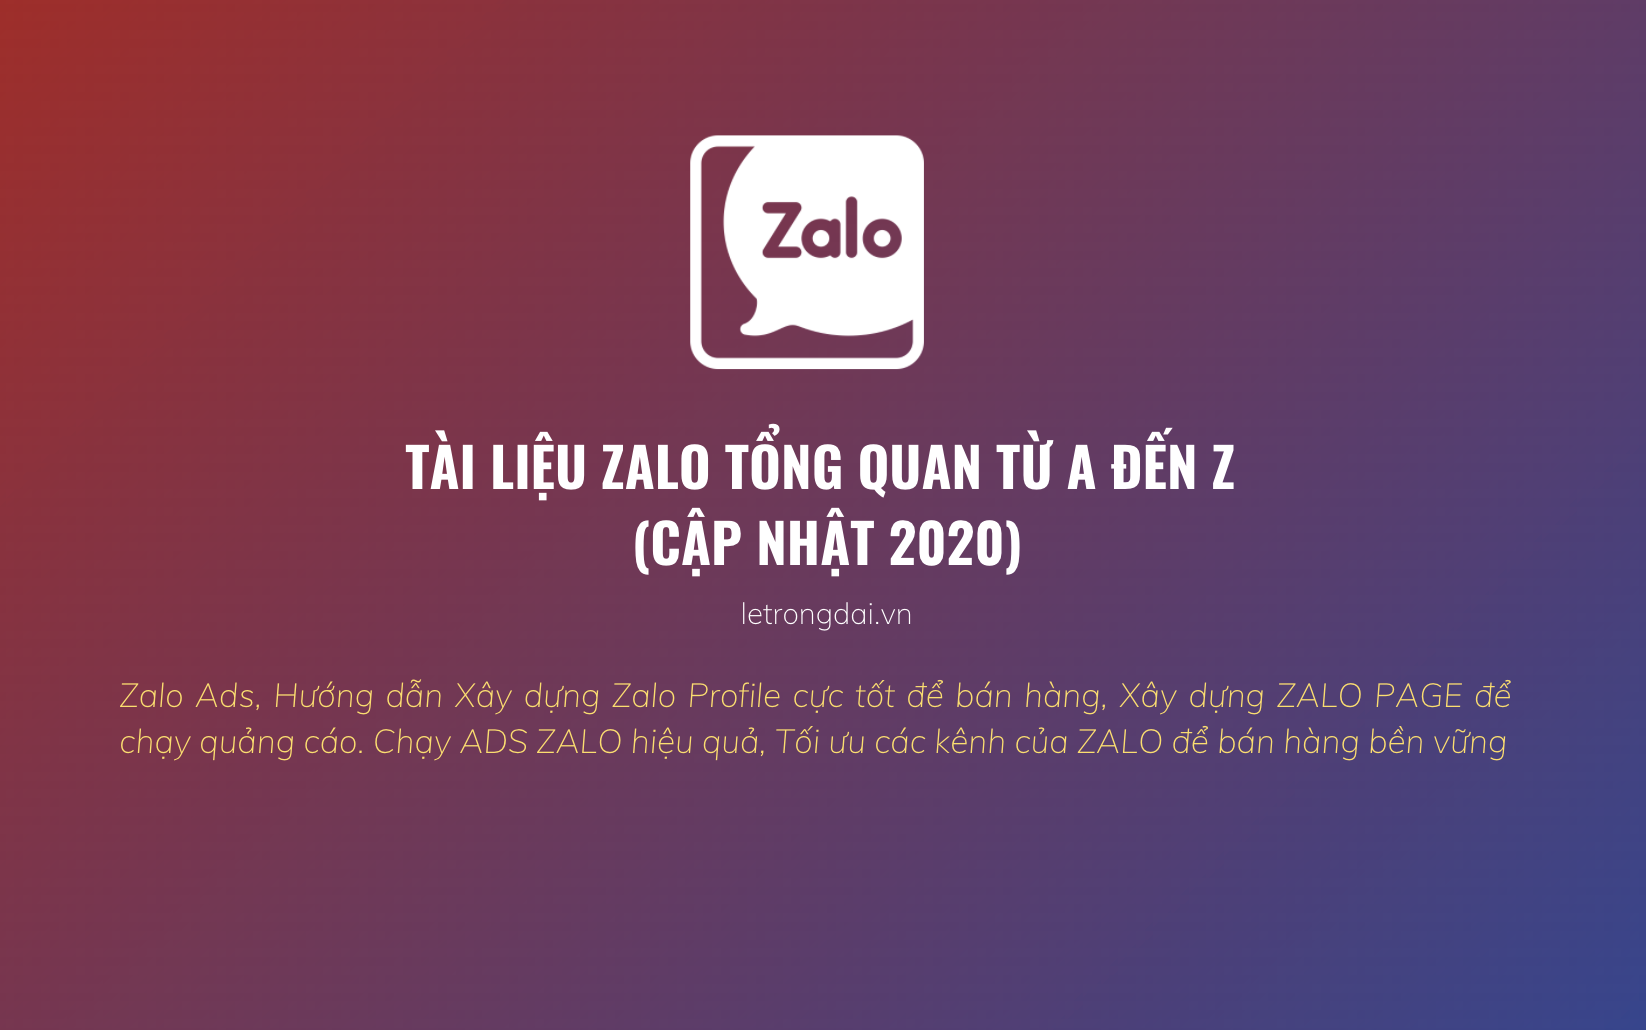 Tài Liệu Zalo Tổng Quan Từ A đến Z (update 2020